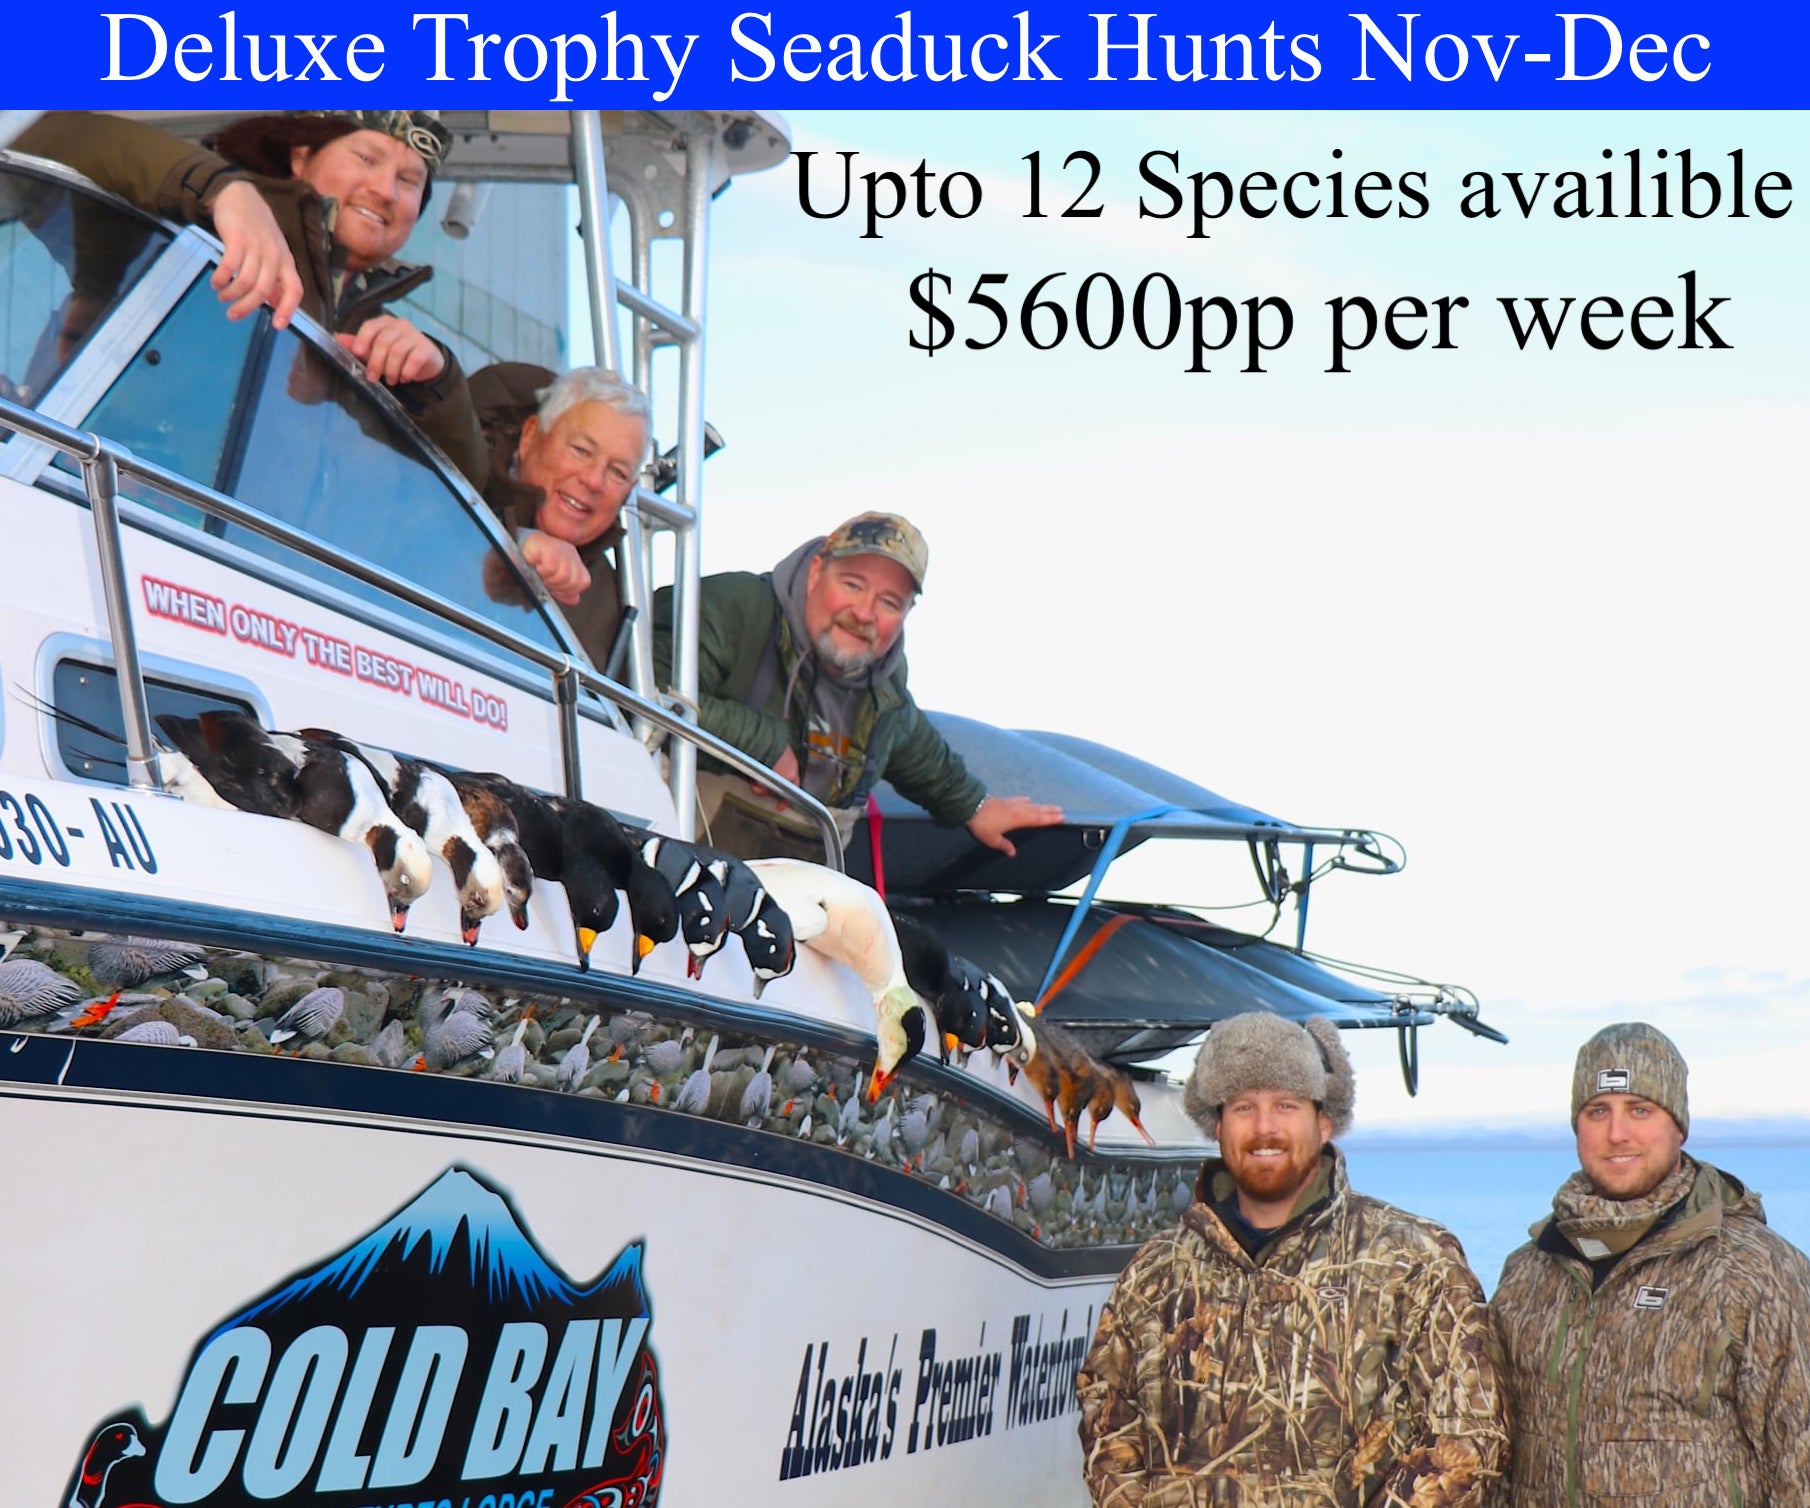 Trophy Seaduck hunts Alaska